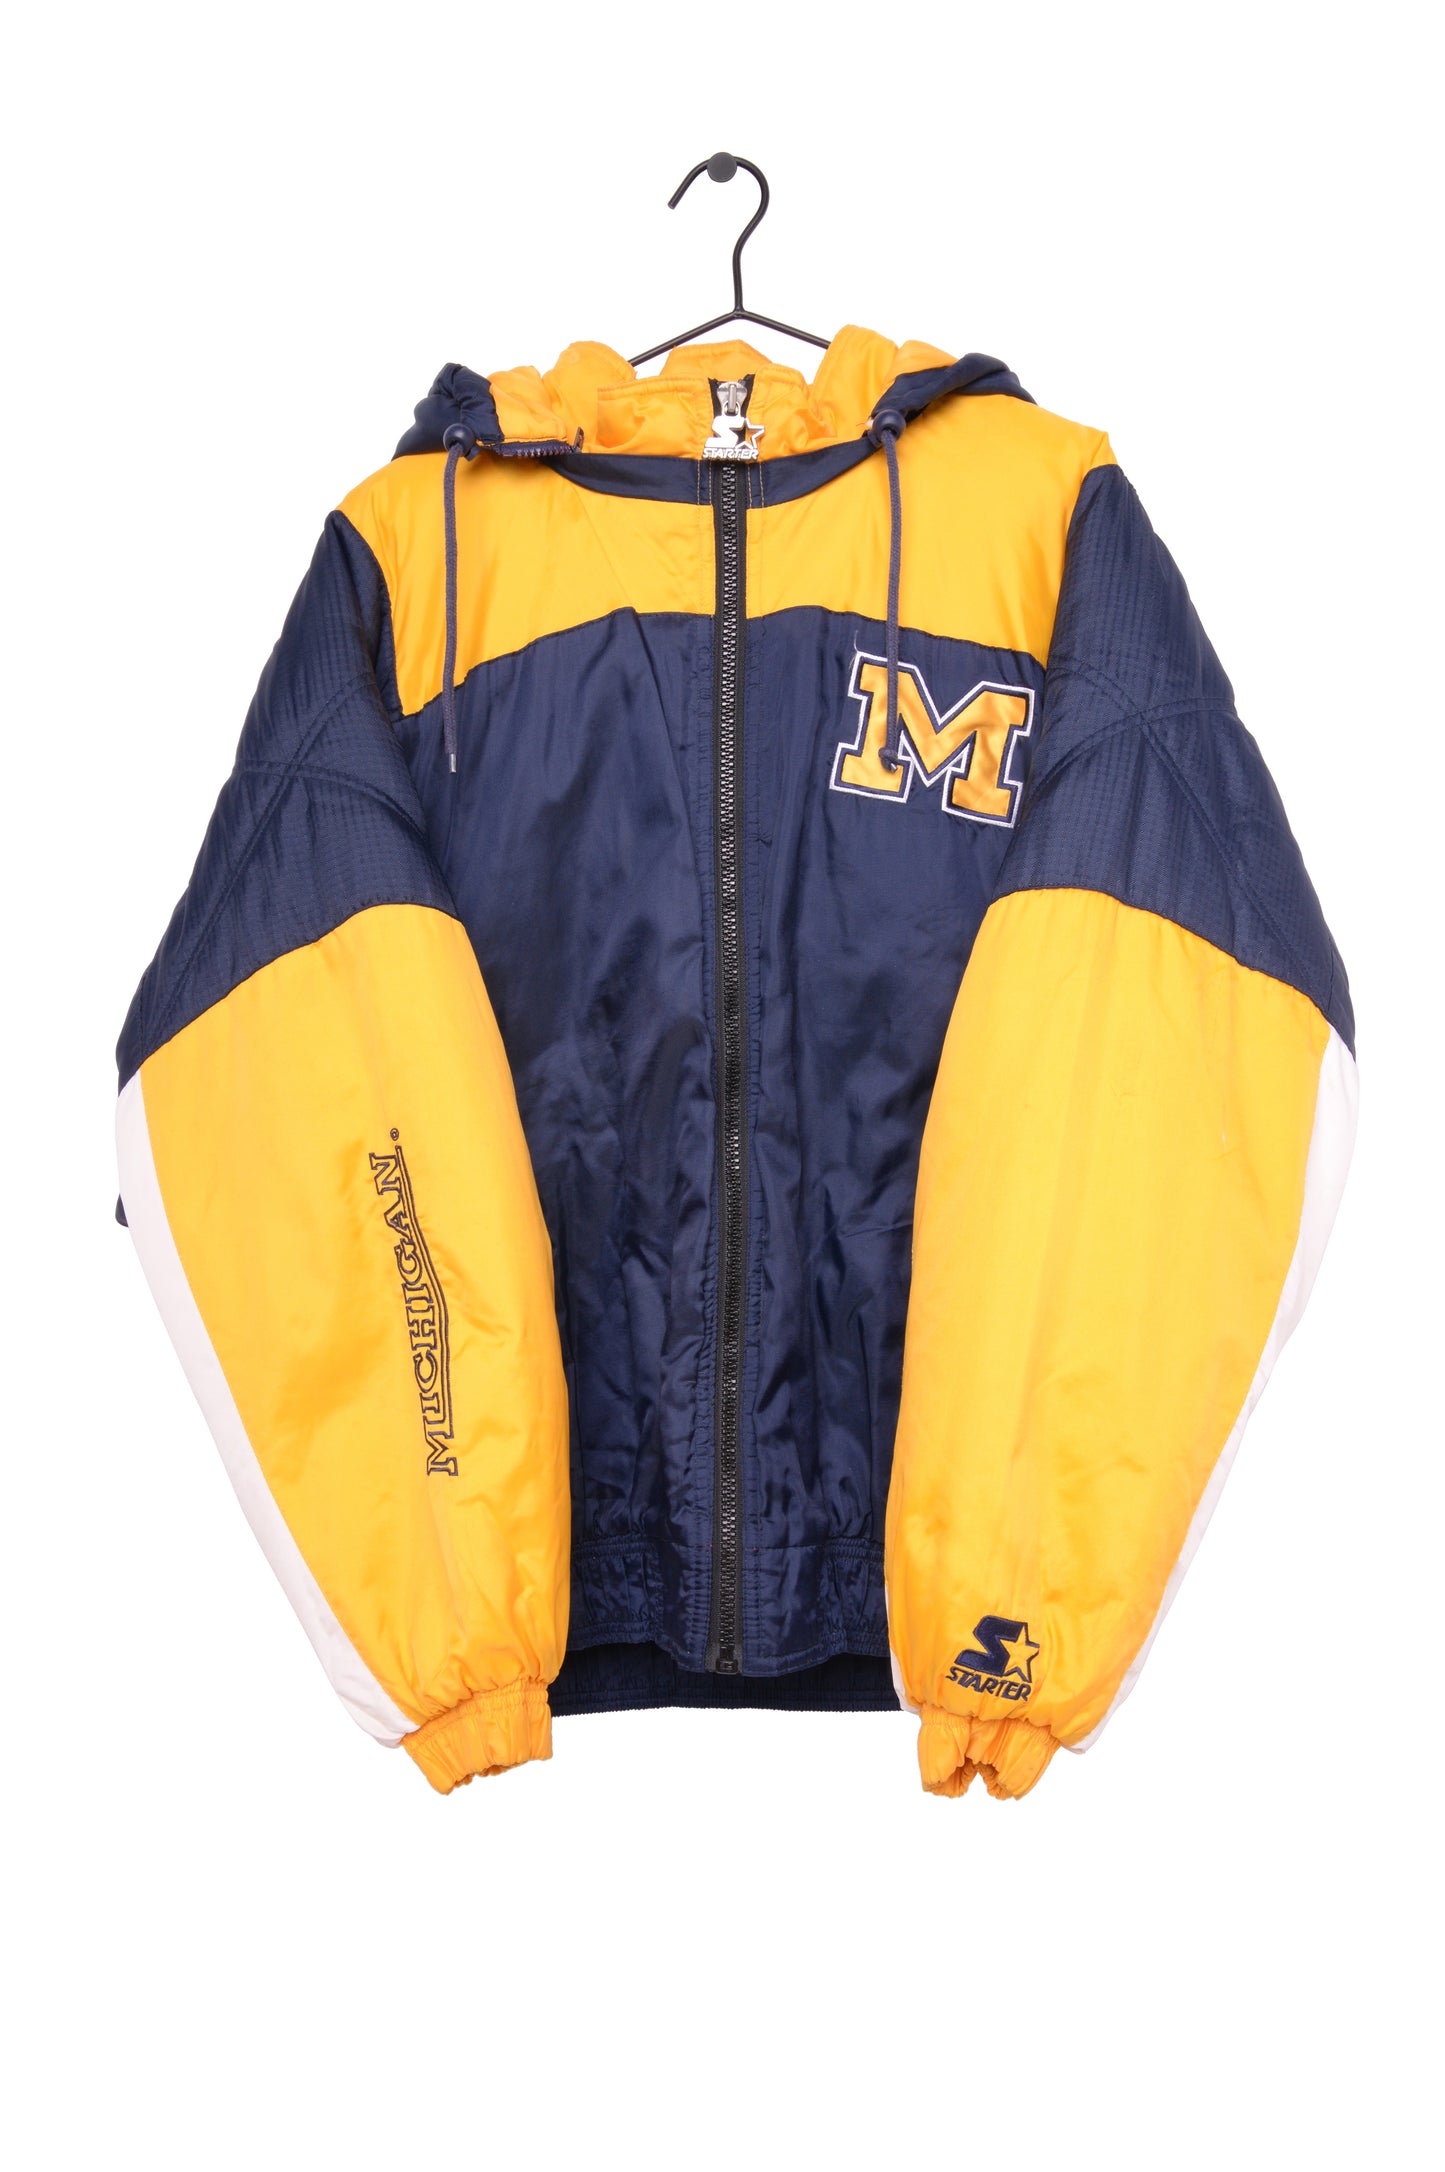 University of Michigan Puffer Jacket